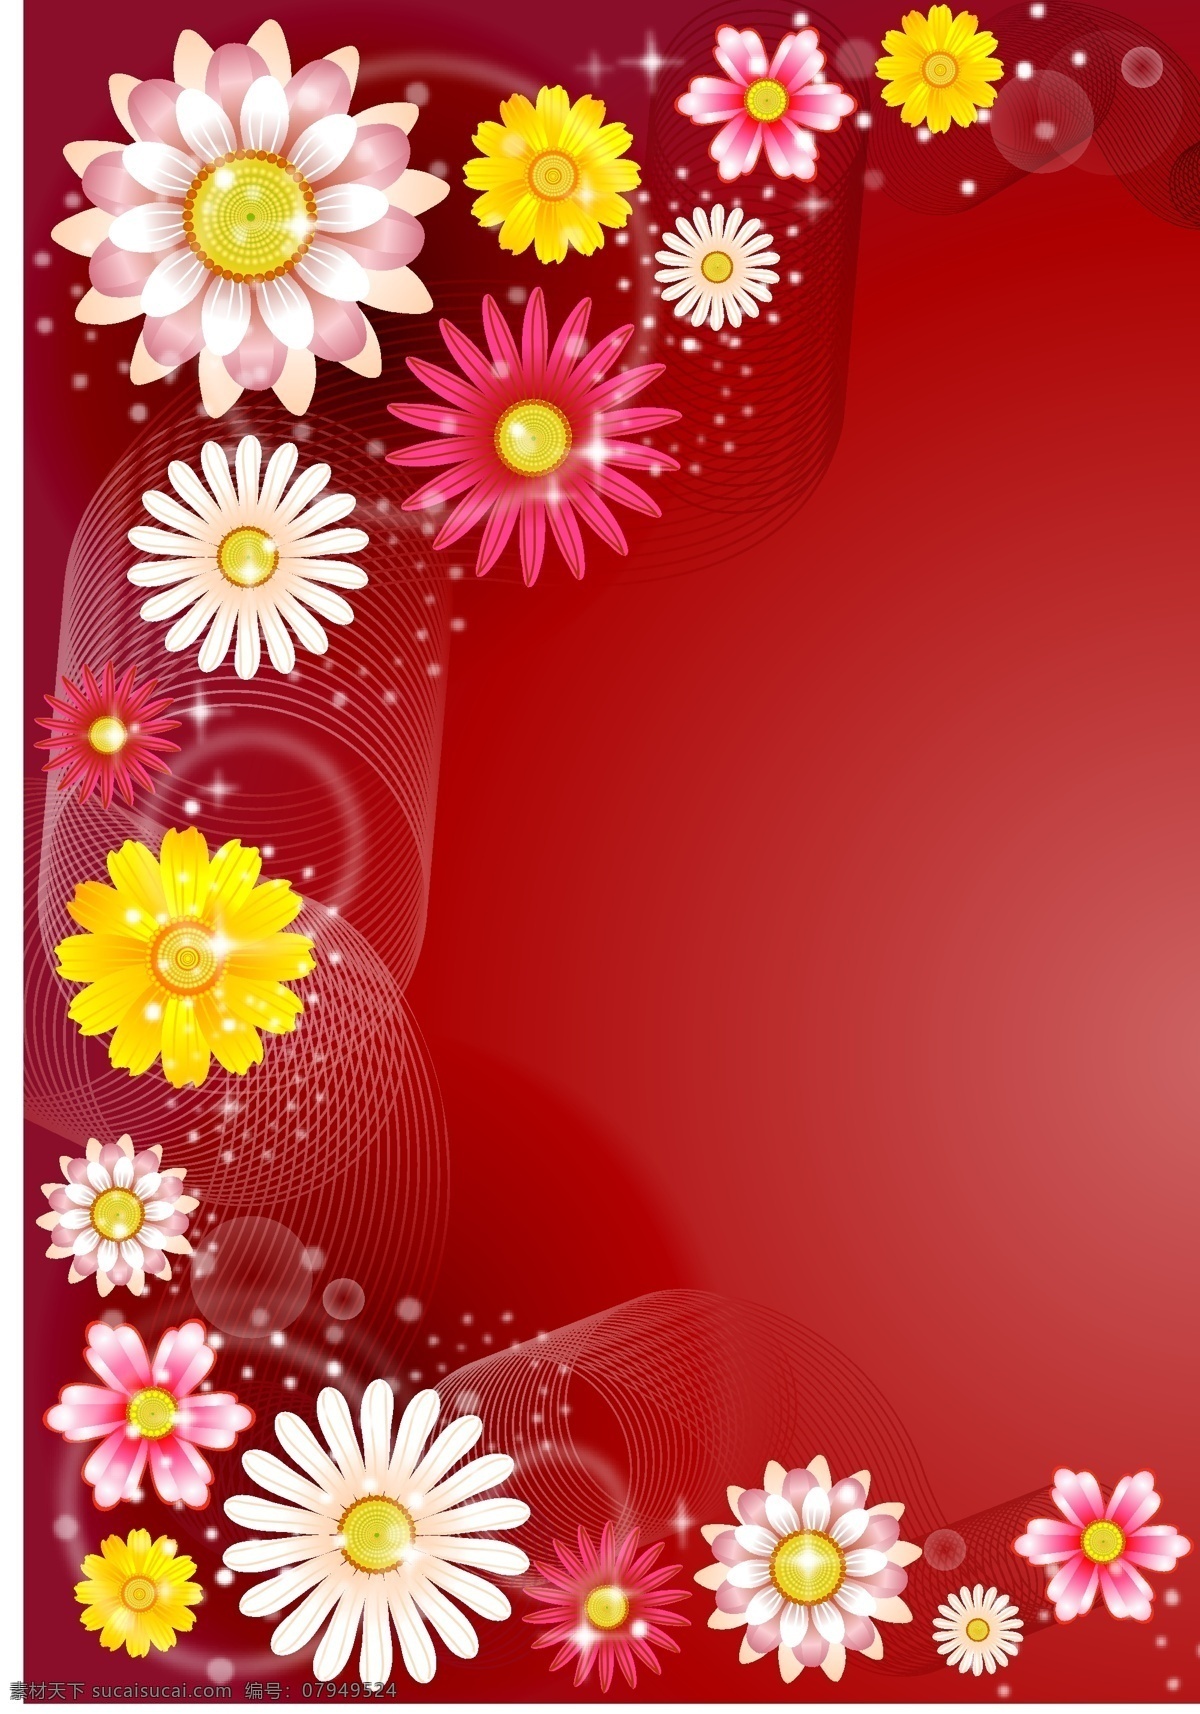 菊花 国 花 花卉 笔记本封面 广告 设计素材 包装印花 时尚花纹 生物世界 花草